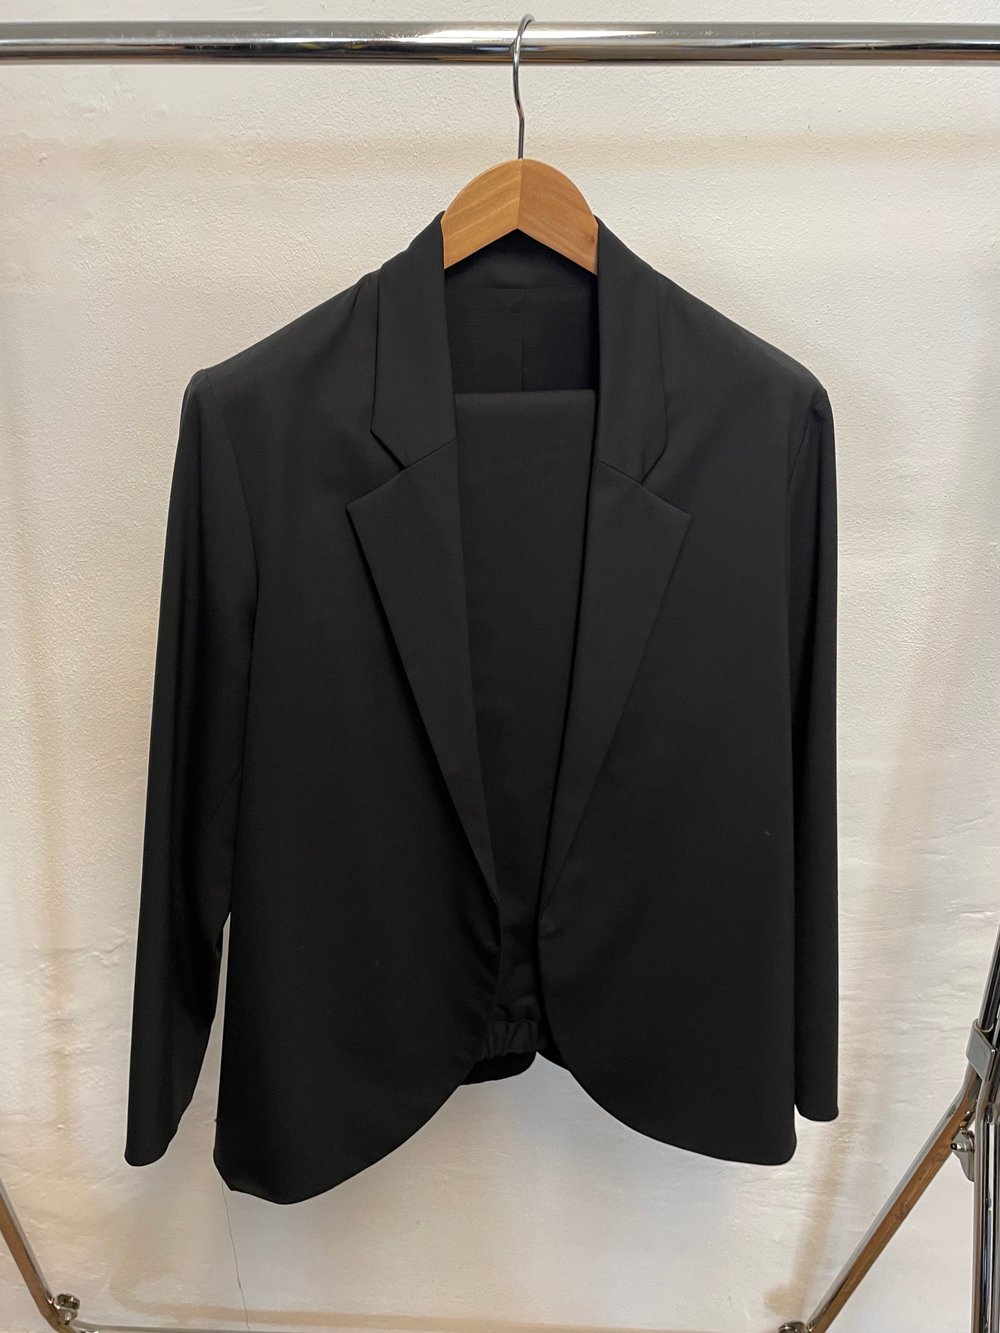 Image of Suit 1 Wool Dark Blue SALES SAMPLE - Mens size 52 